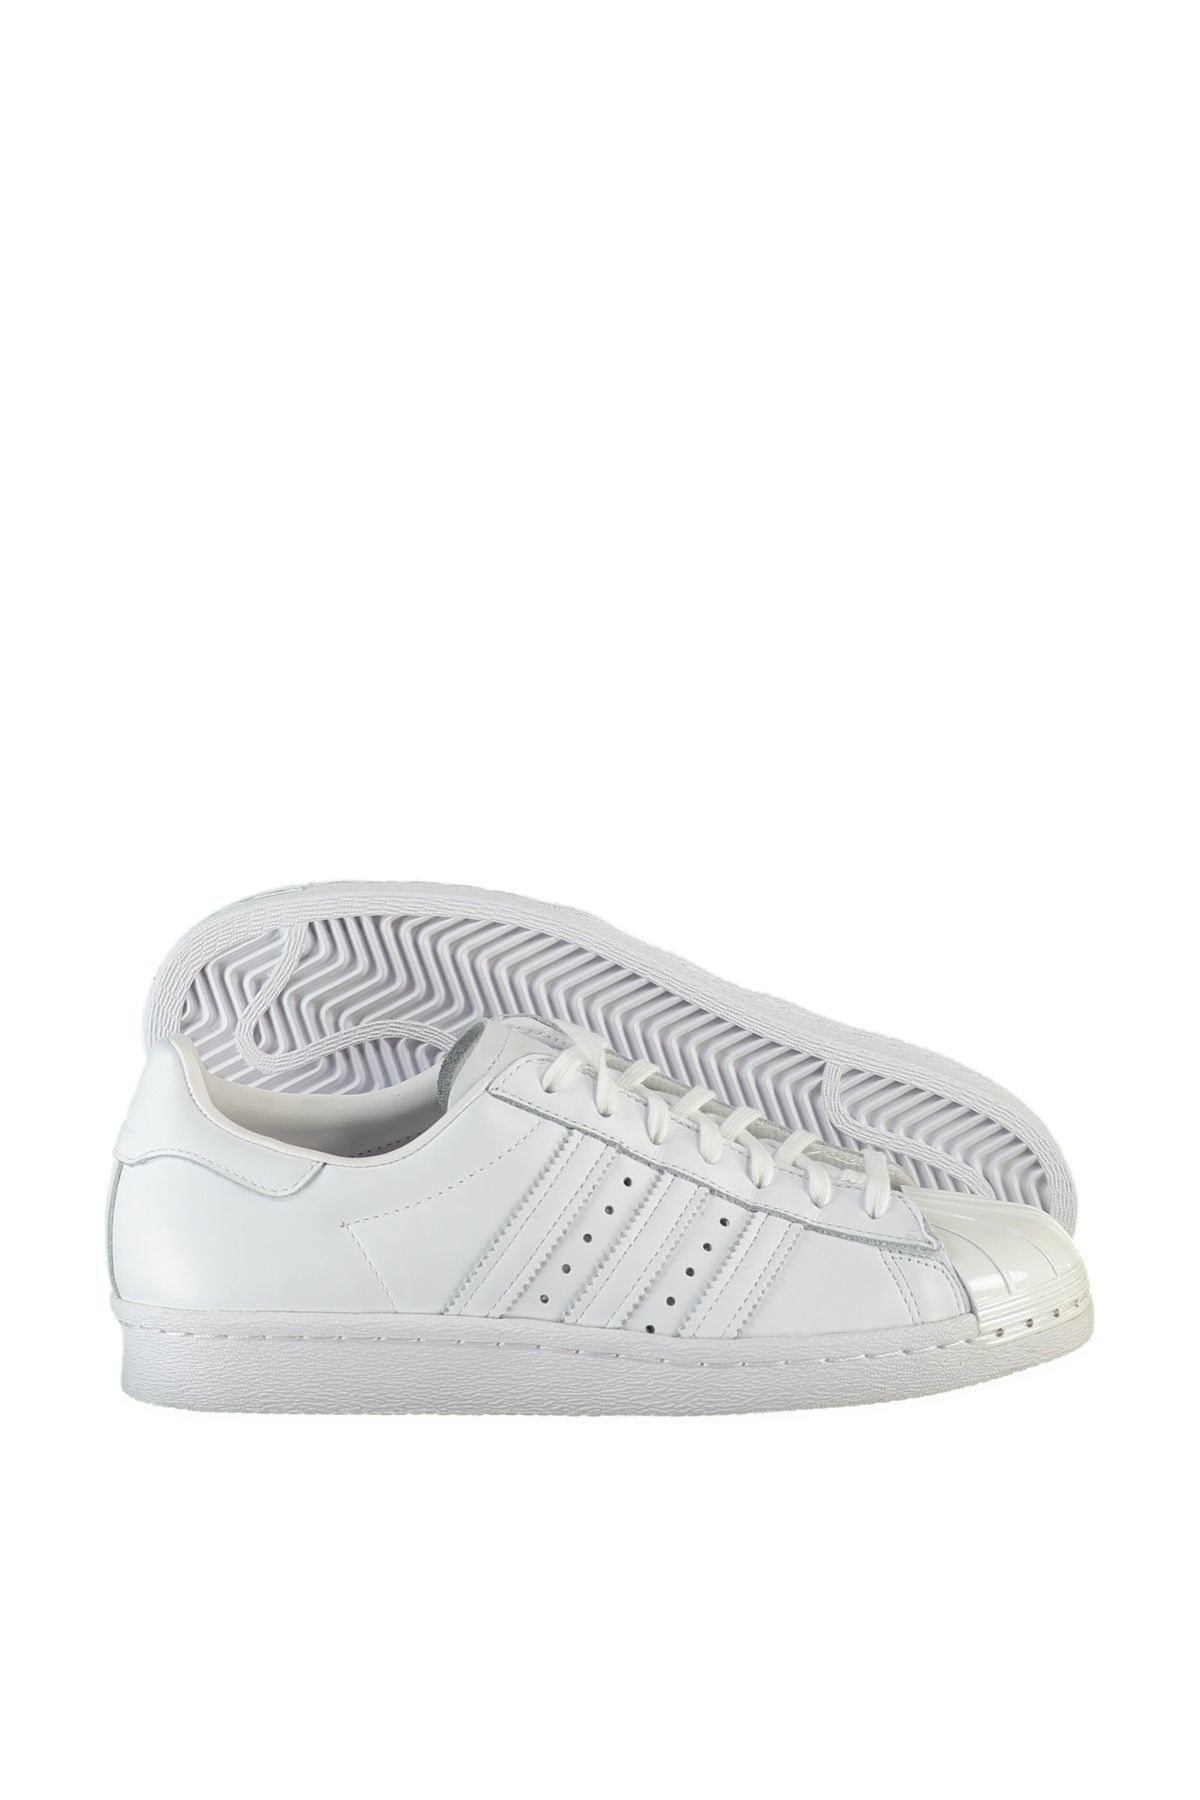 adidas SUPERSTAR 80S METAL Beyaz Kadın Sneaker Ayakkabı 100407209